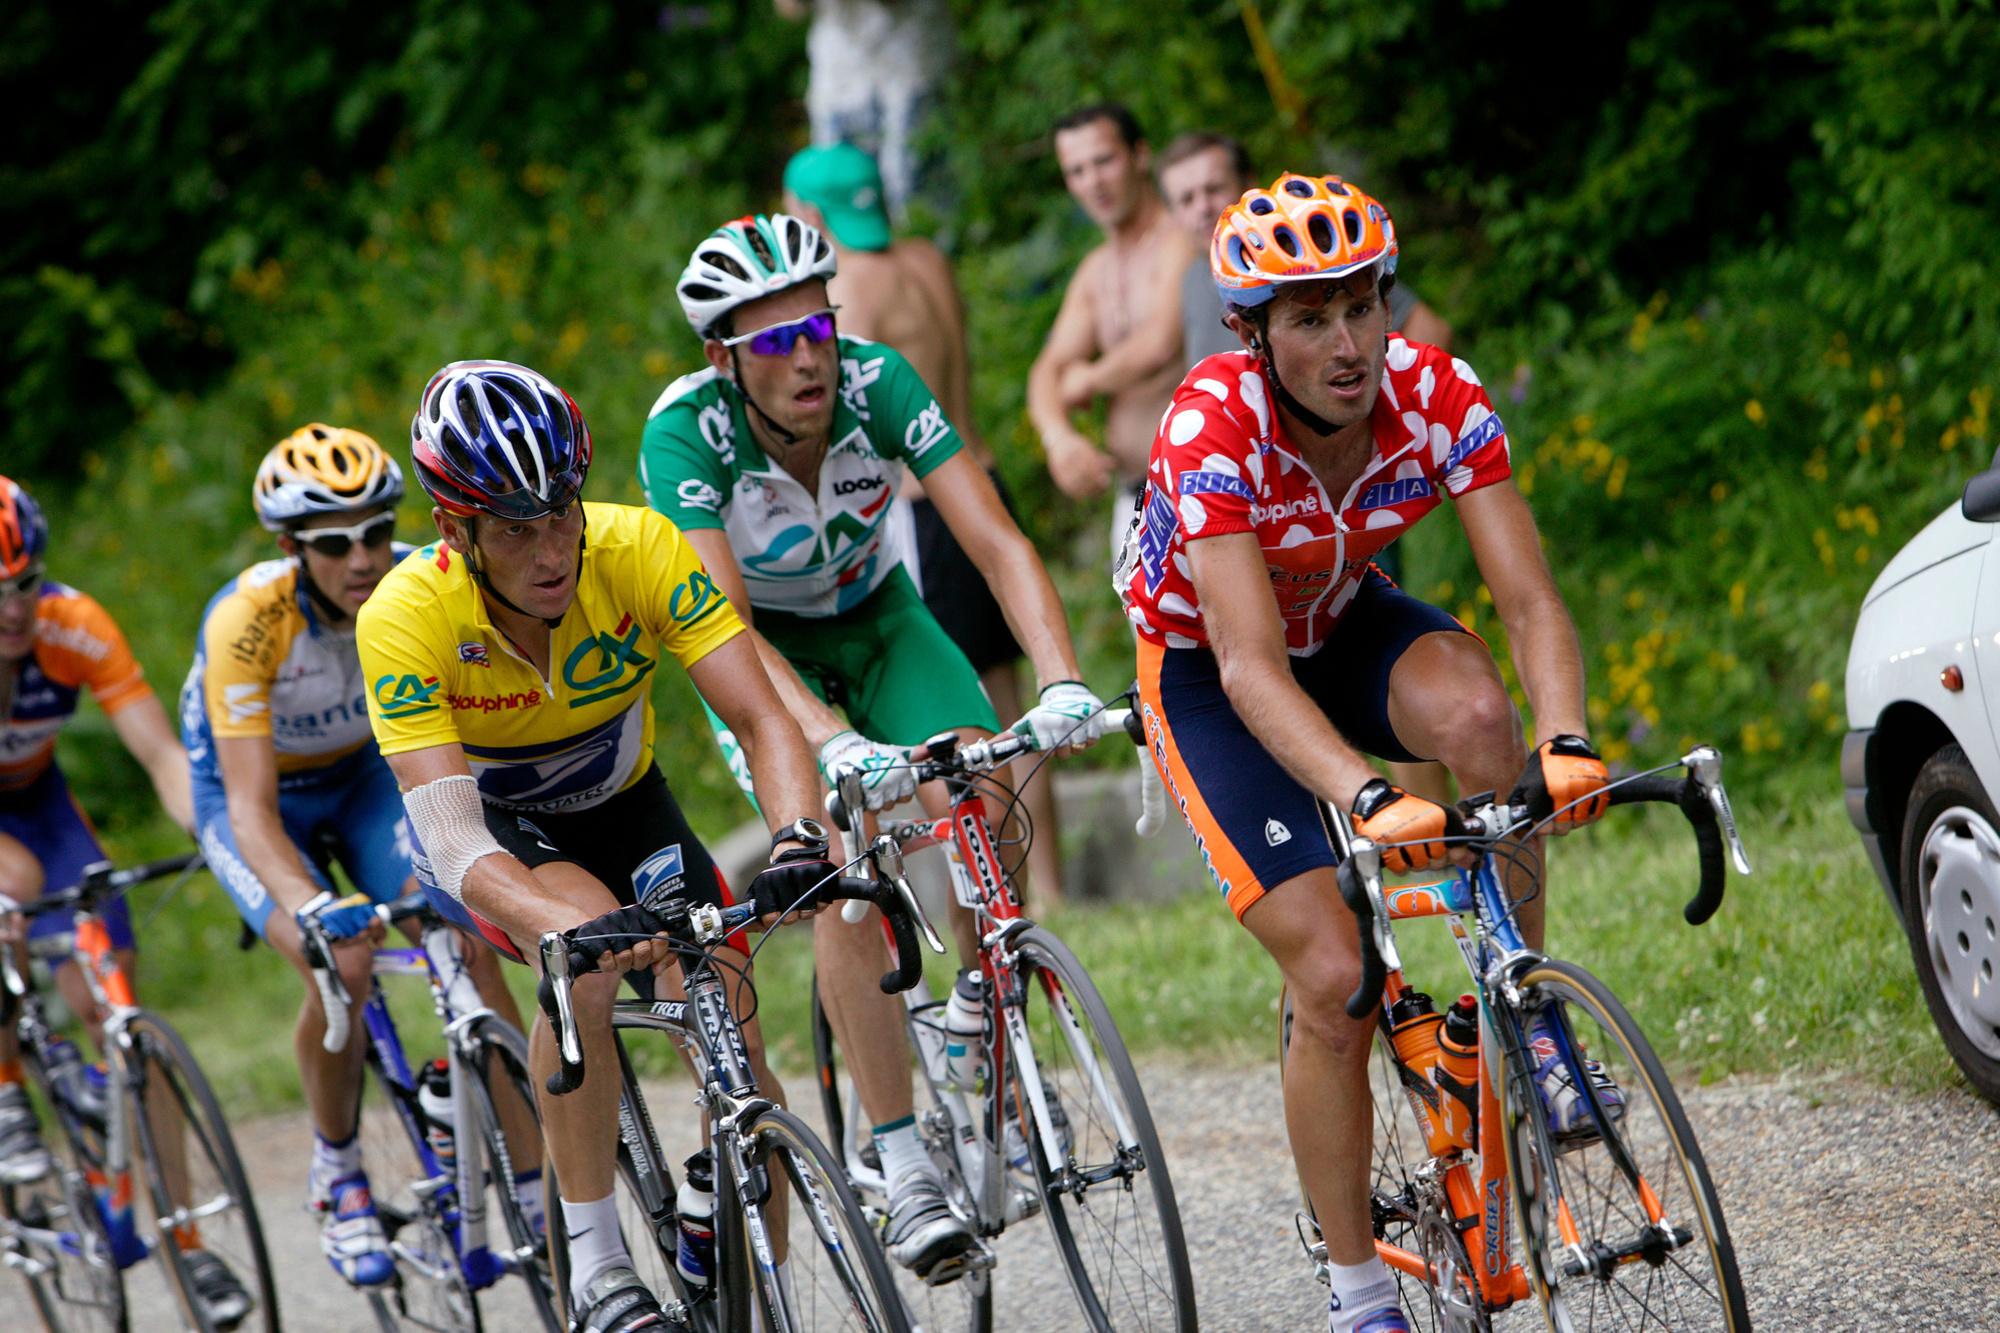 Iban Mayo maakte het in de Dauphiné van 2003 Lance Armstrong flink lastig, maar zou daarvoor later de prijs betalen.